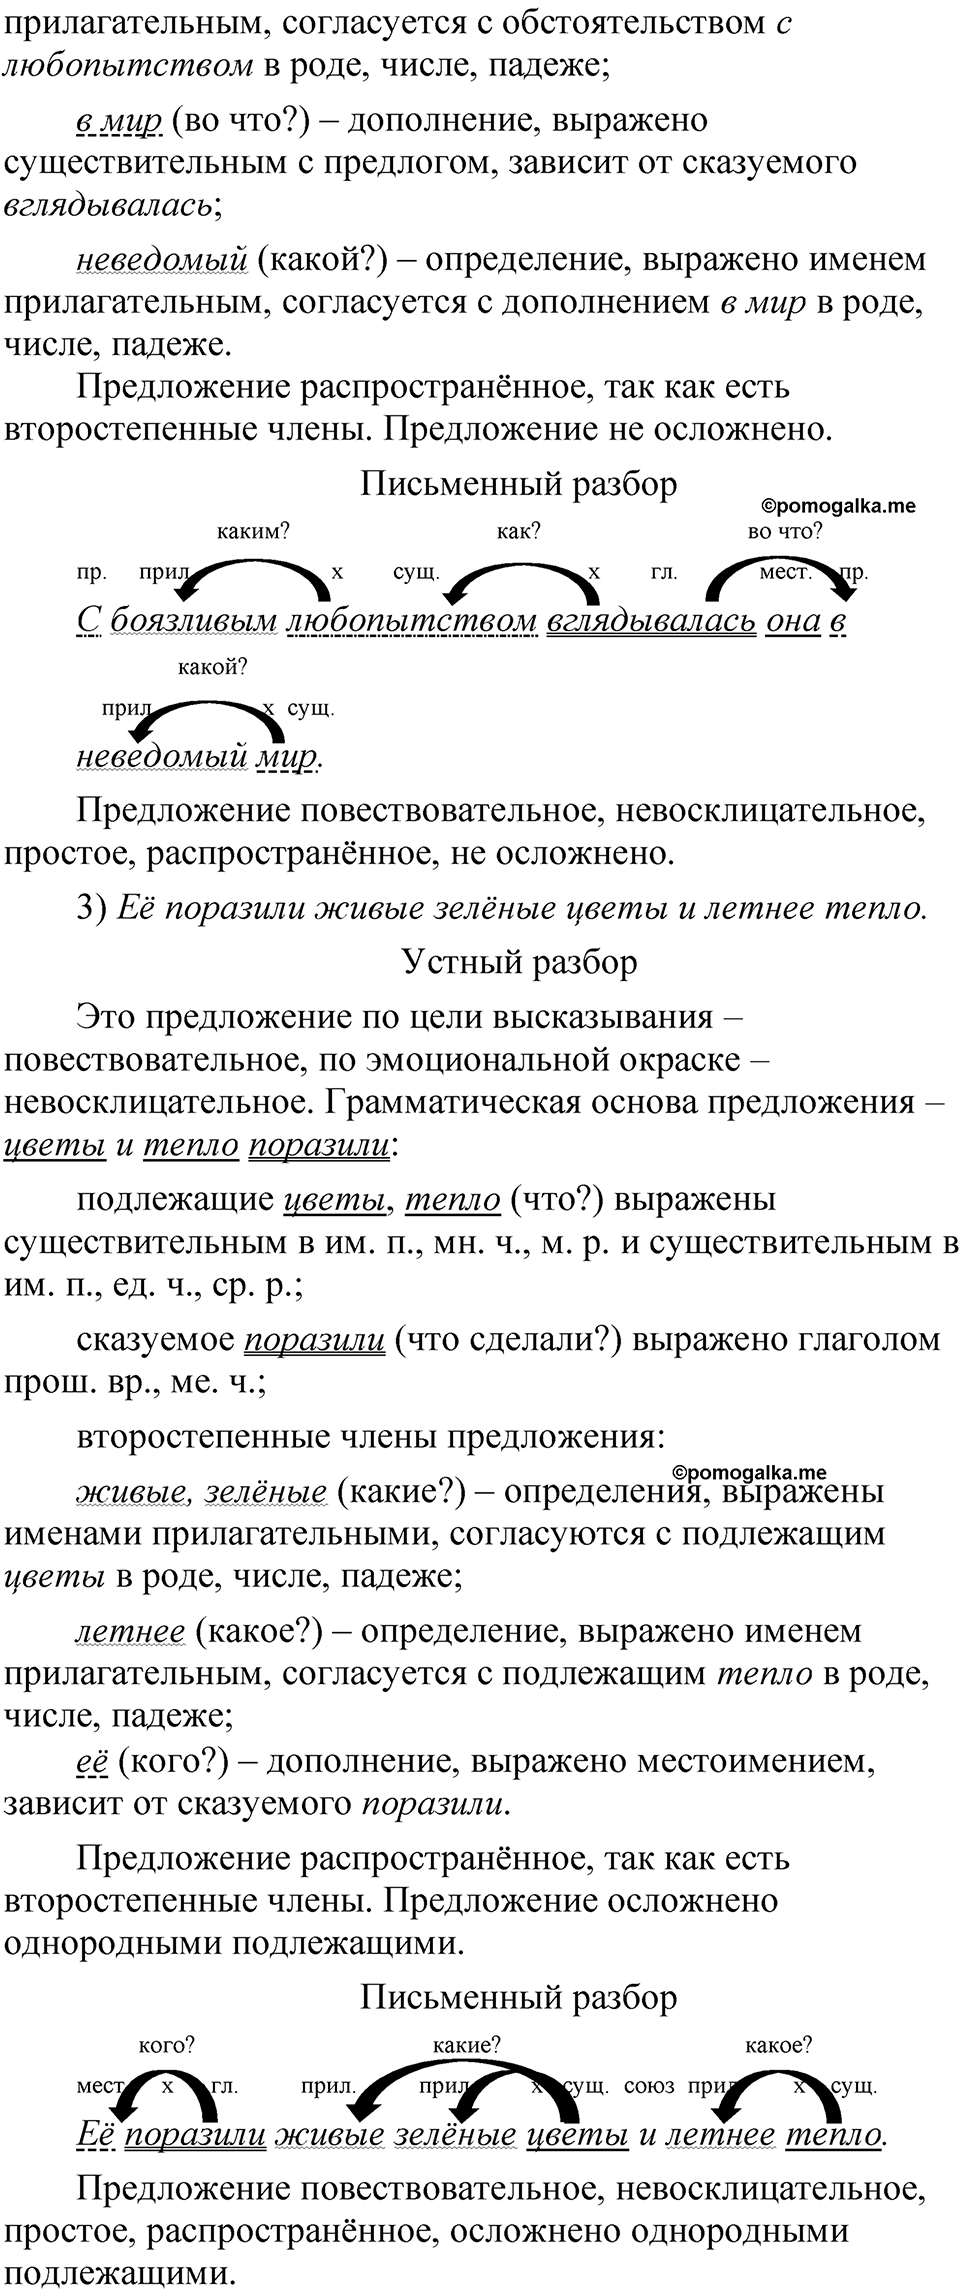 страница 146 упражнение 185 русский язык 5 класс Быстрова, Кибирева 1 часть 2021 год